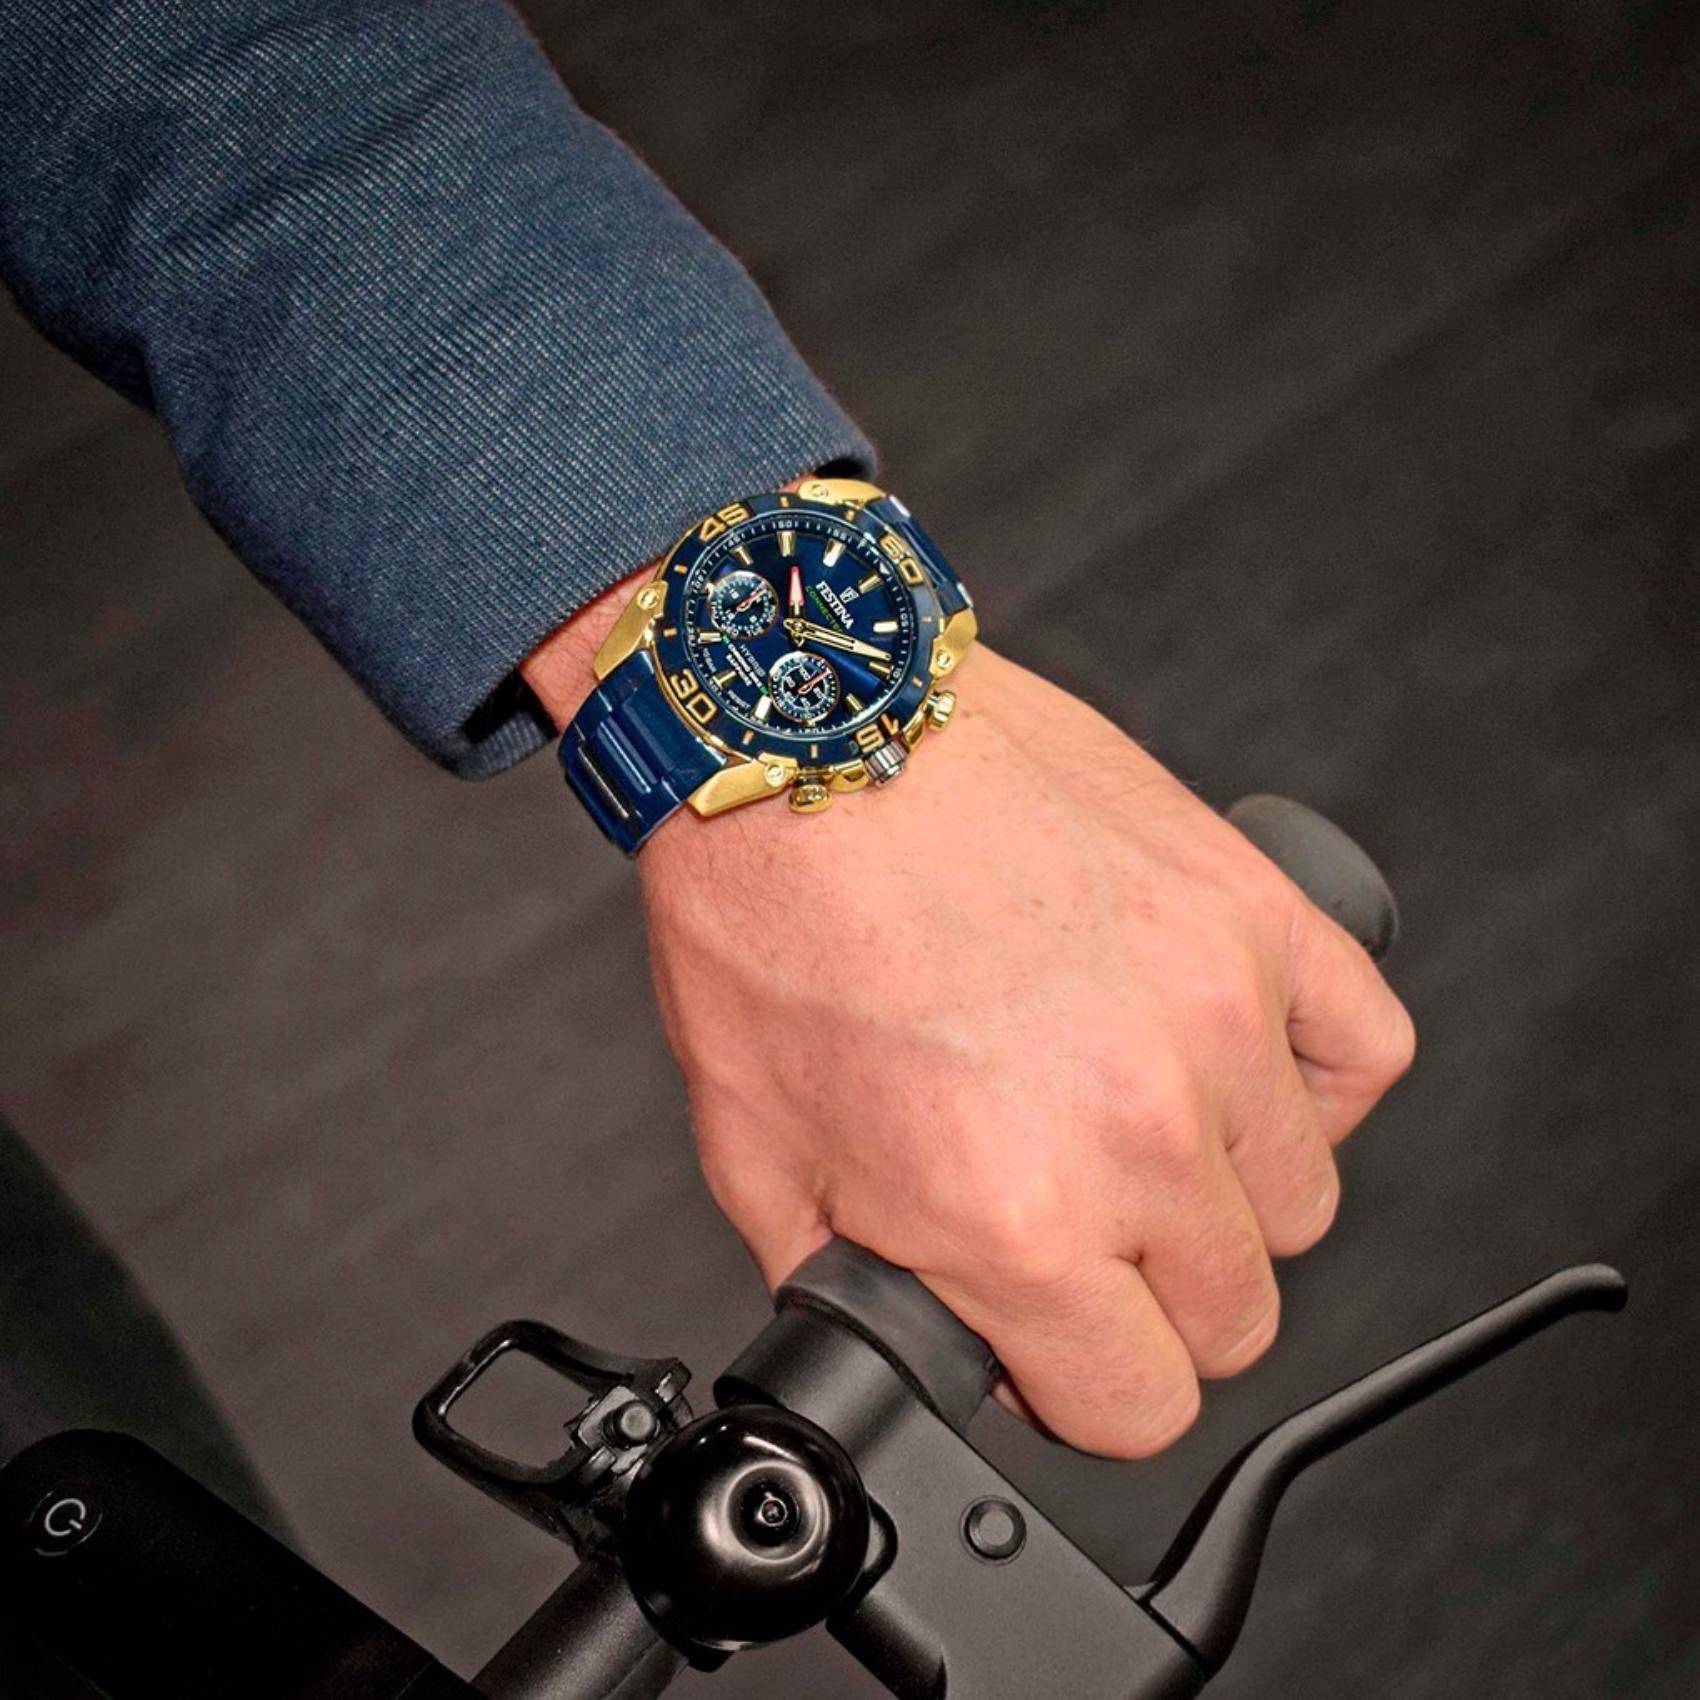 Αντρικό ρολόι Festina Smartwatch Chrono Bike Connected F20547/1 με μπλε σκούρο ατσάλινο μπρασελέ, μπλε σκούρο καντραν, μηχανισμό μπαταρίας με λειτουργίες swartwatch, στρογγυλό στεφάνι με διάμετρο 45,5mm, αδιάβροχο στις 10ΑΤΜ-100Μ.